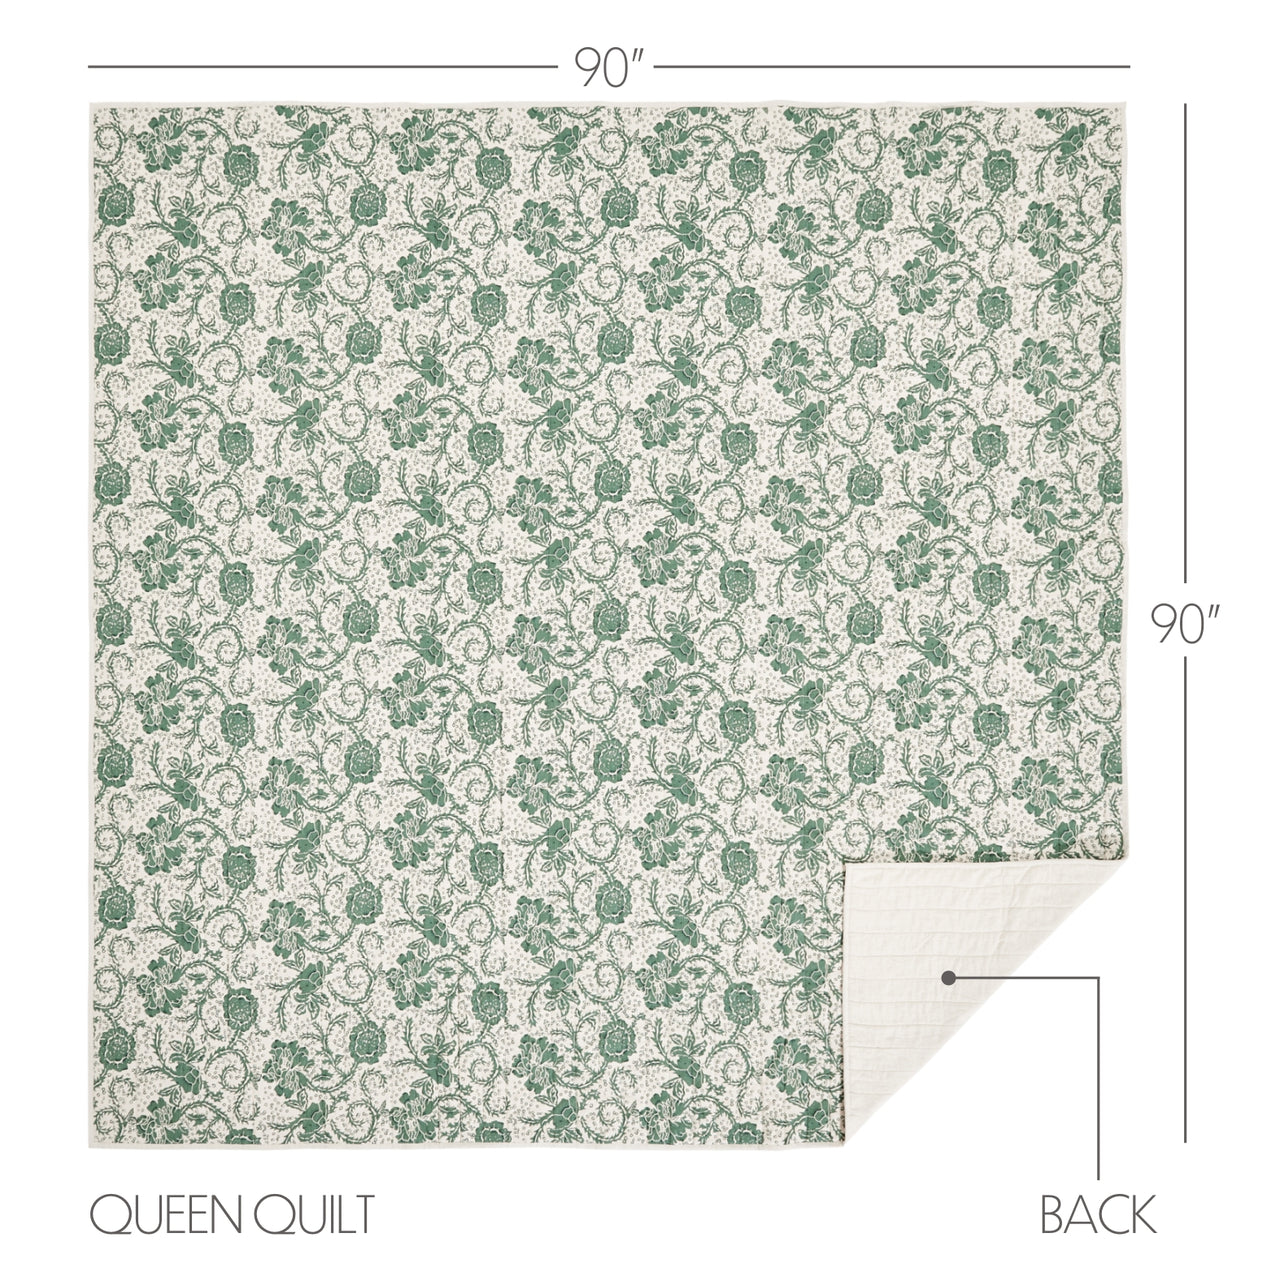 Dorset Green Floral Queen Quilt 90Wx90L VHC Brands